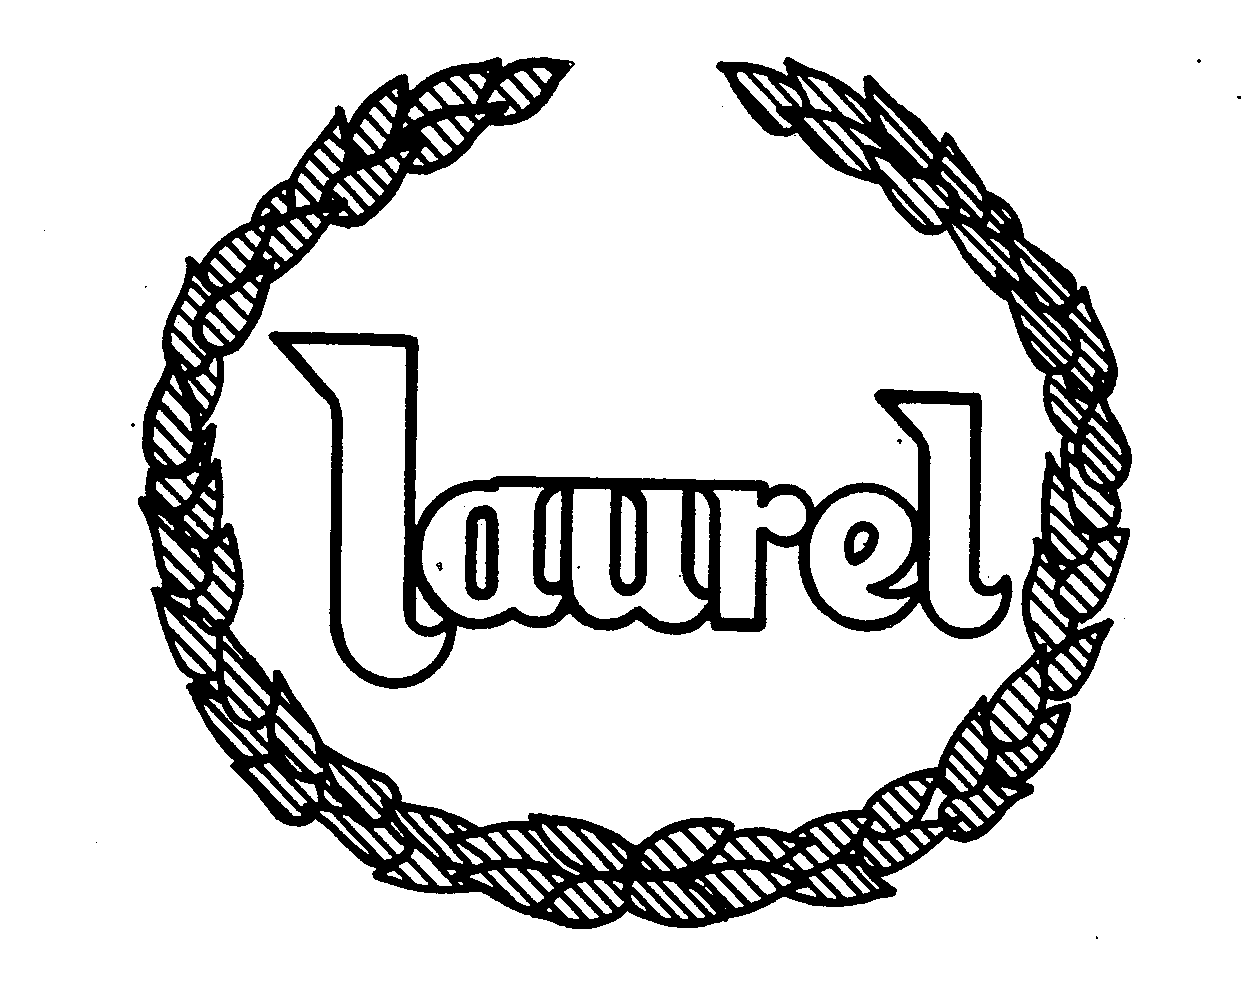 Trademark Logo LAUREL